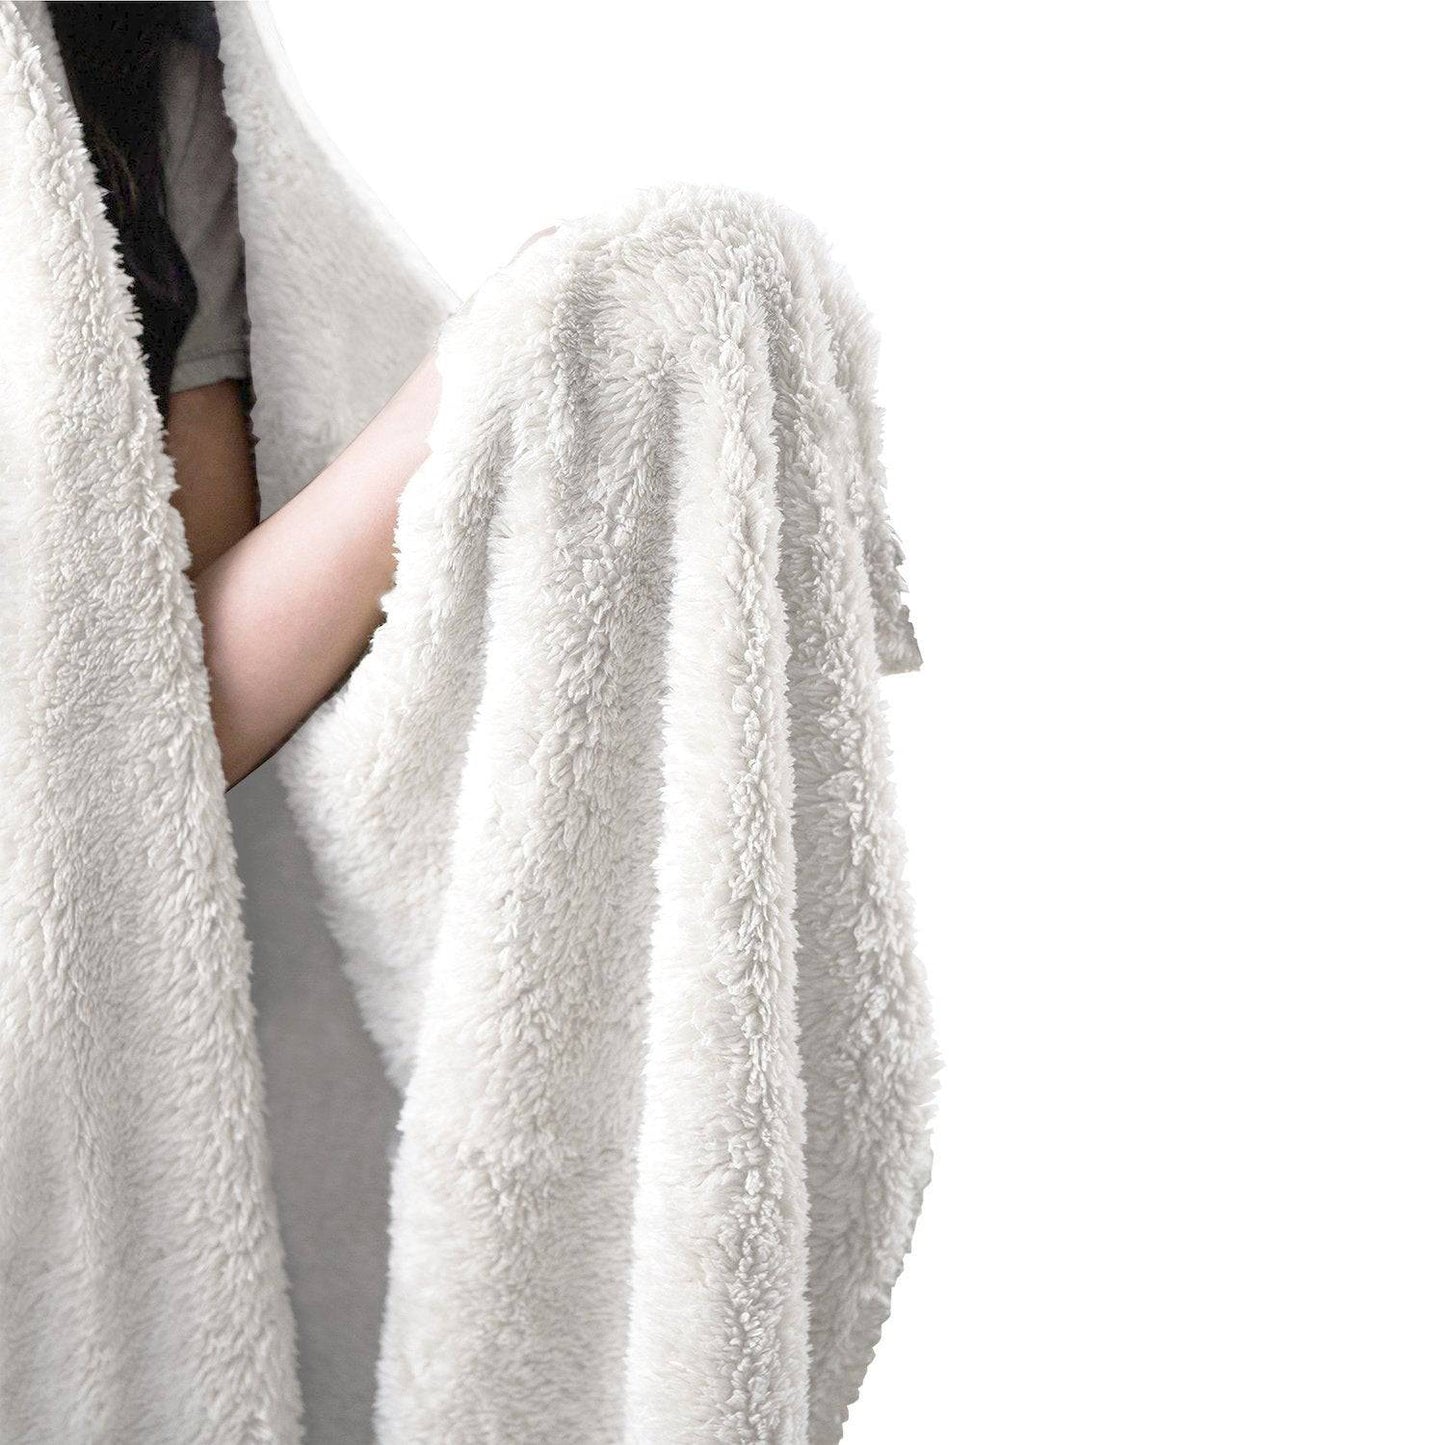 Psyched Hooded Blanket, Yantrart Design, | iEDM